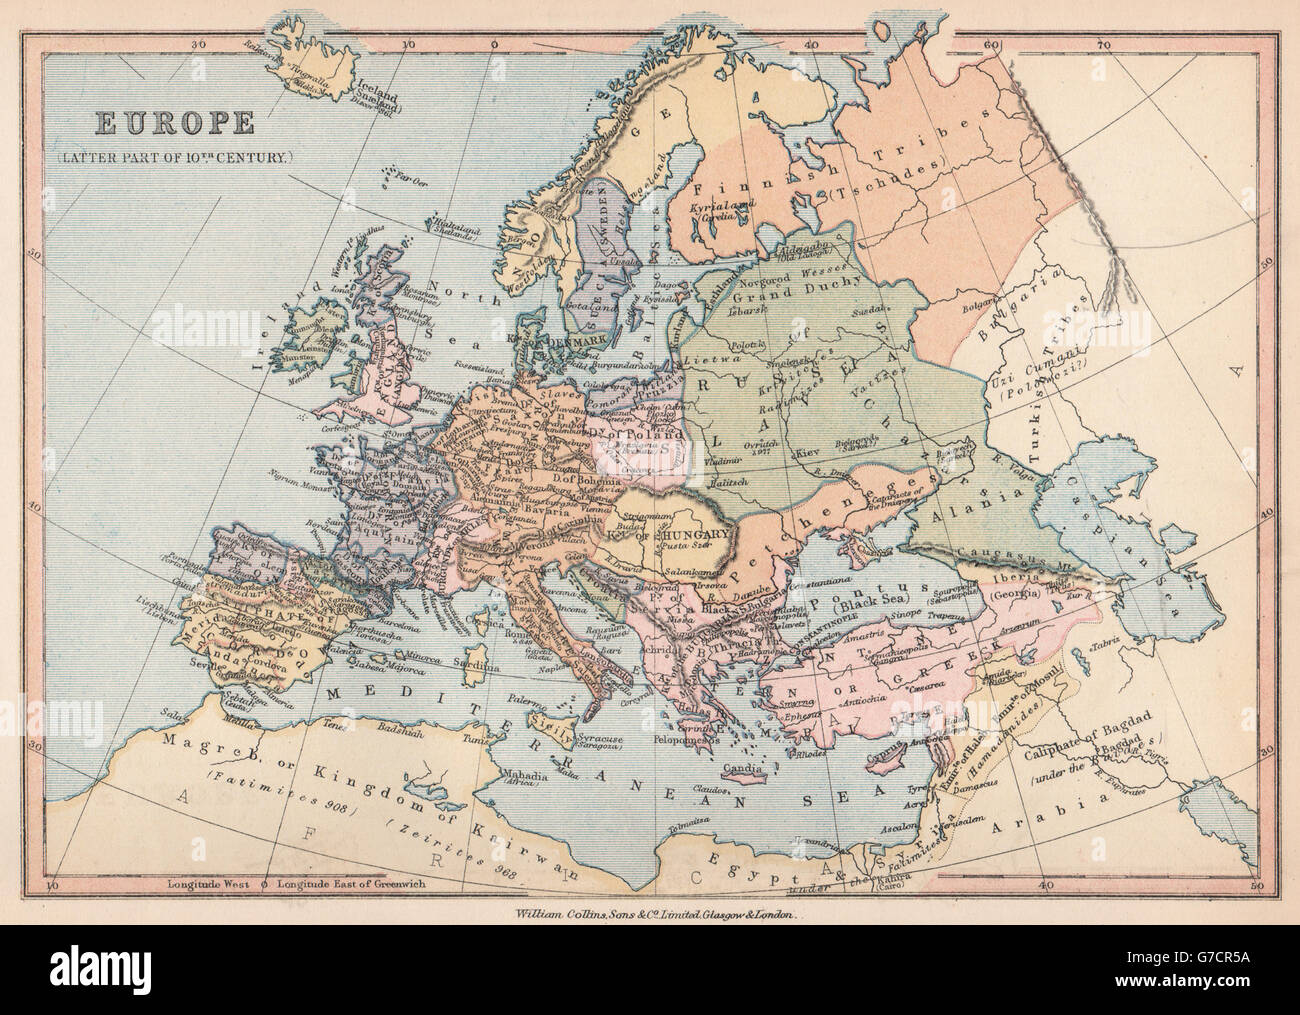 'Europe (Latter part of 10th Century)'. BARTHOLOMEW, 1878 antique map Stock Photo